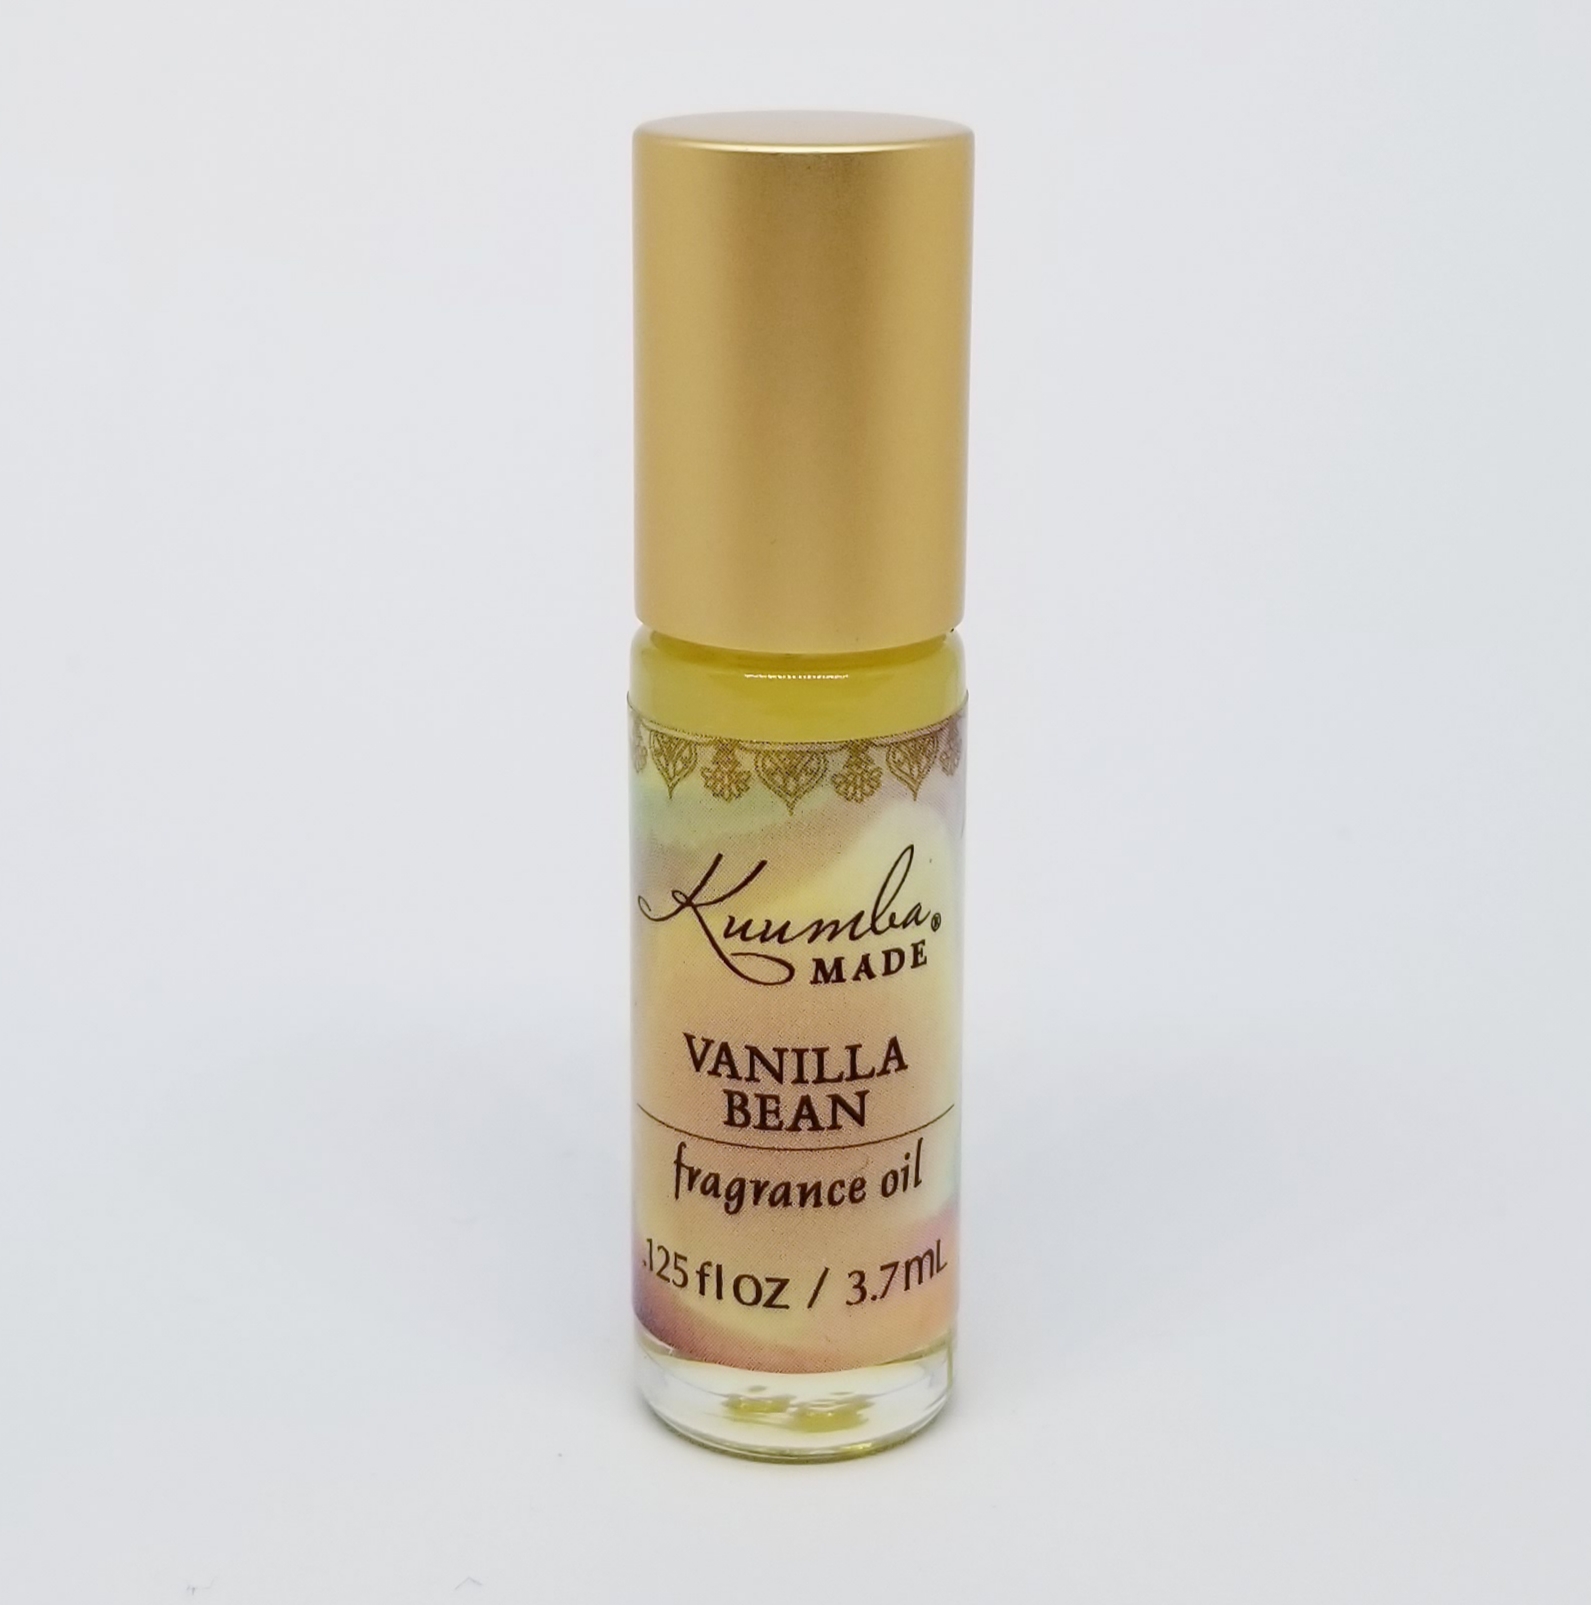 Vanilla Bean by Kuumba Made » Reviews & Perfume Facts